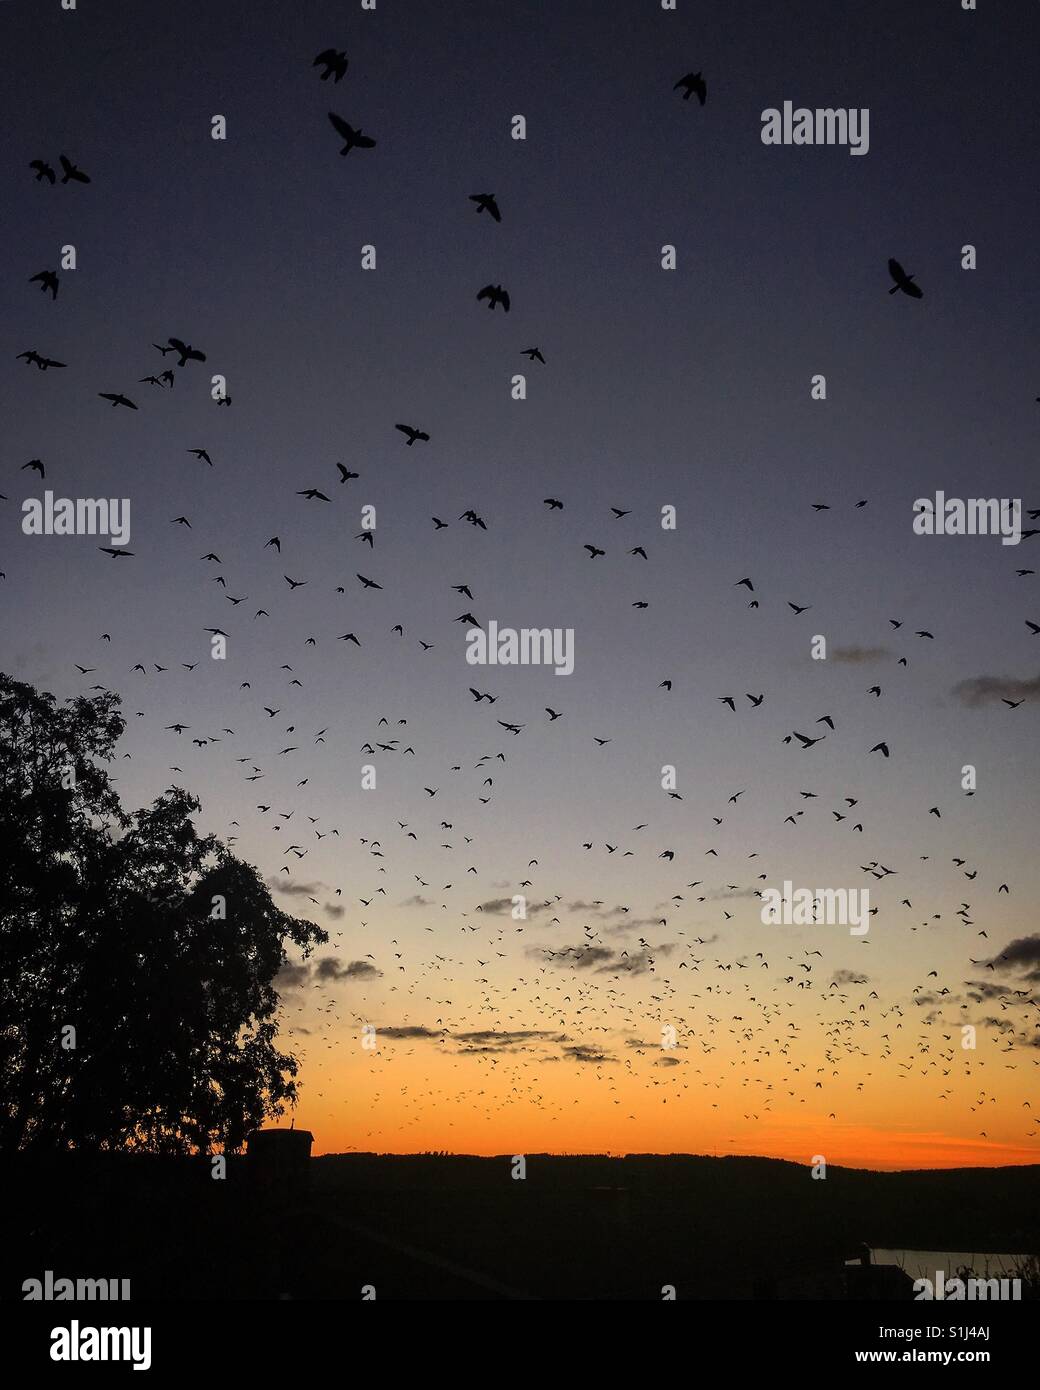 Sunset & bird silouettes Stock Photo